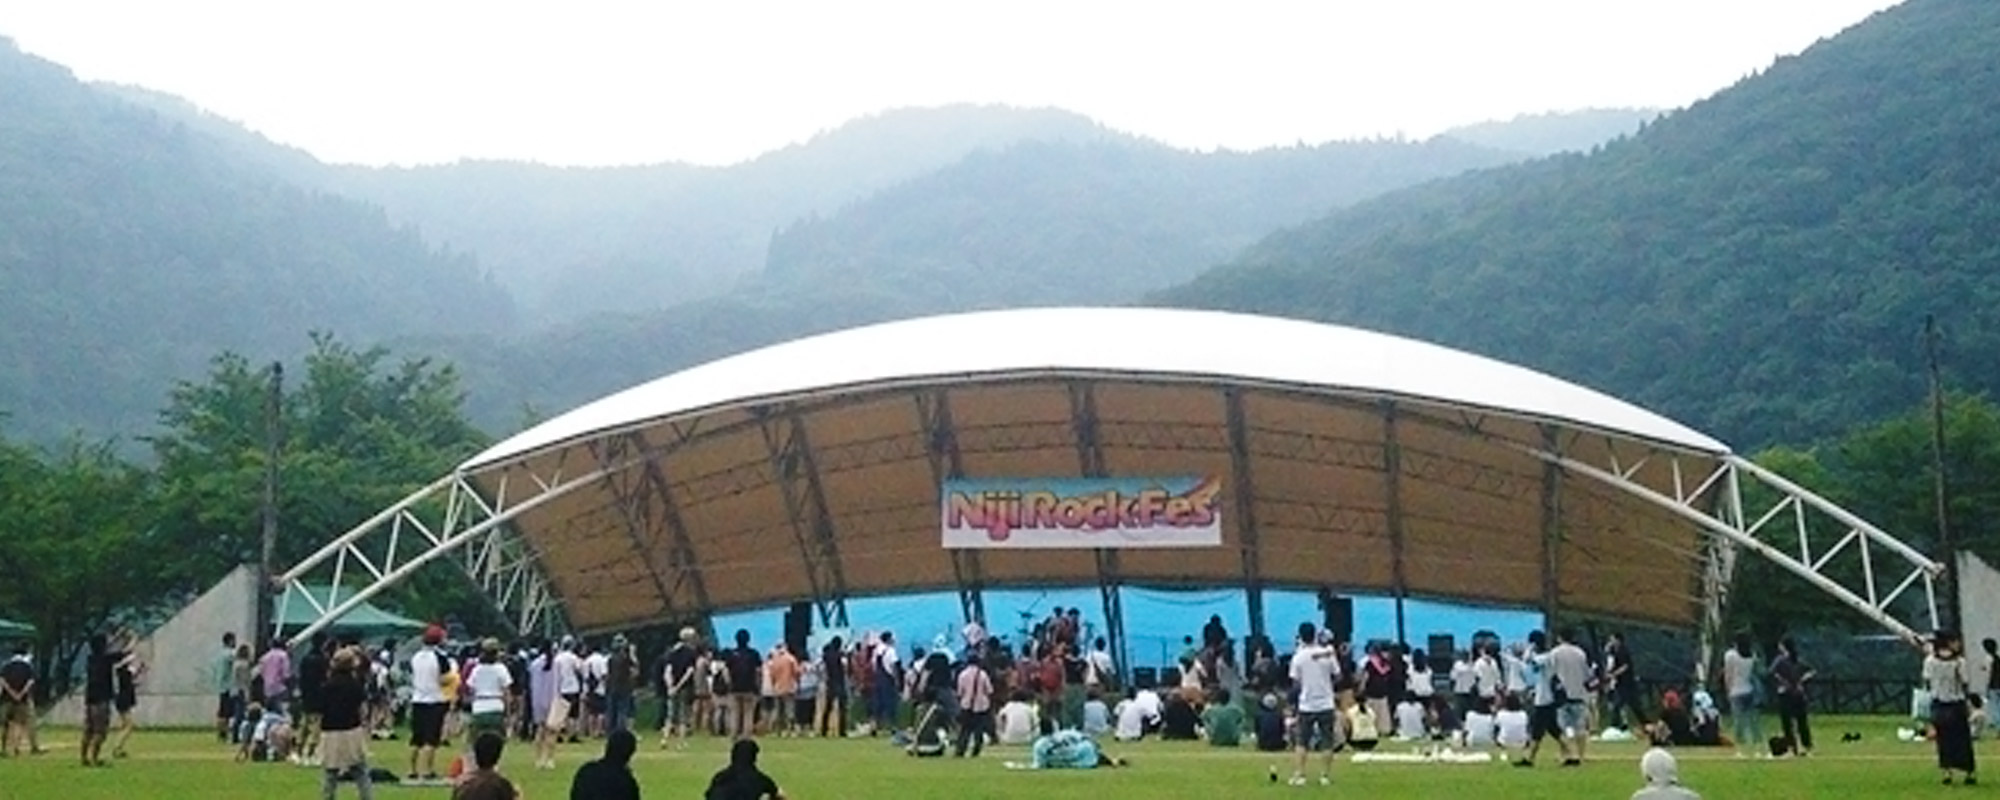 Nijinoko Rock Festival